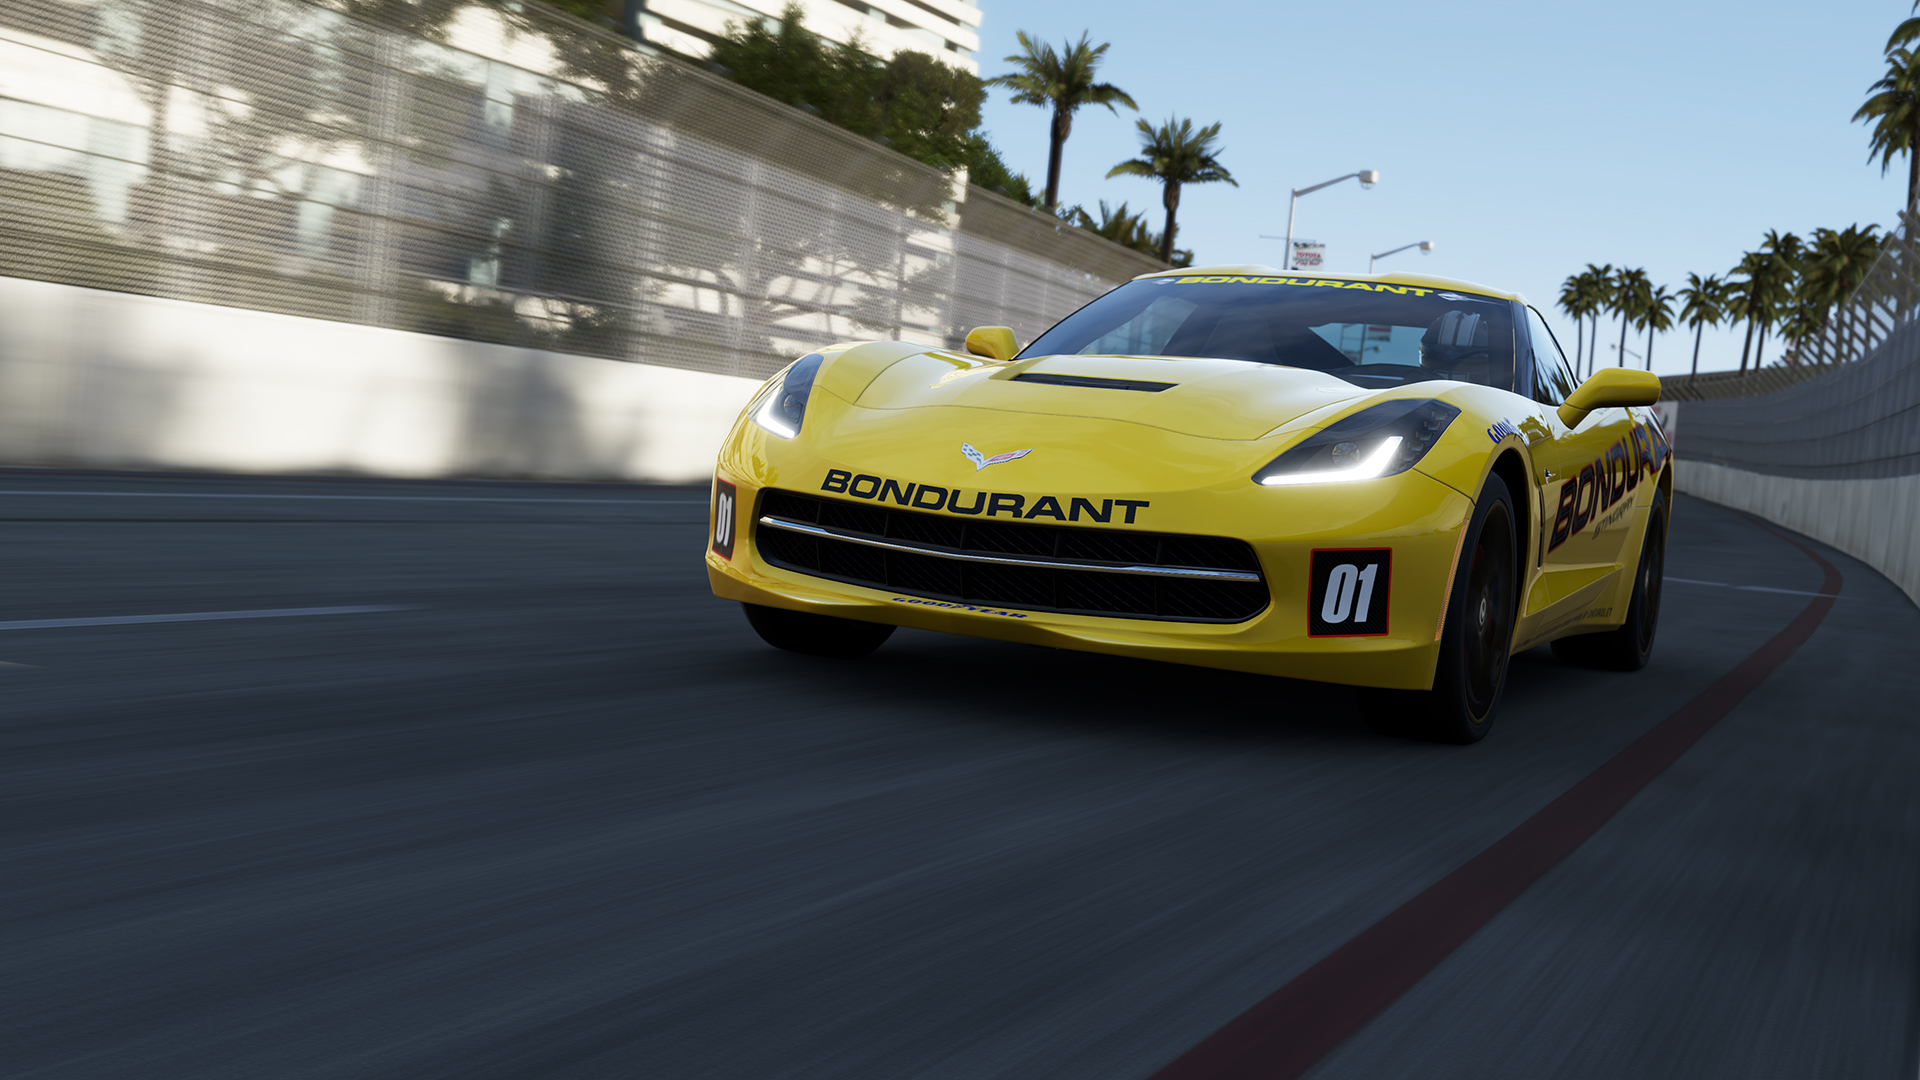 Forza Motorsport 5 - Metacritic